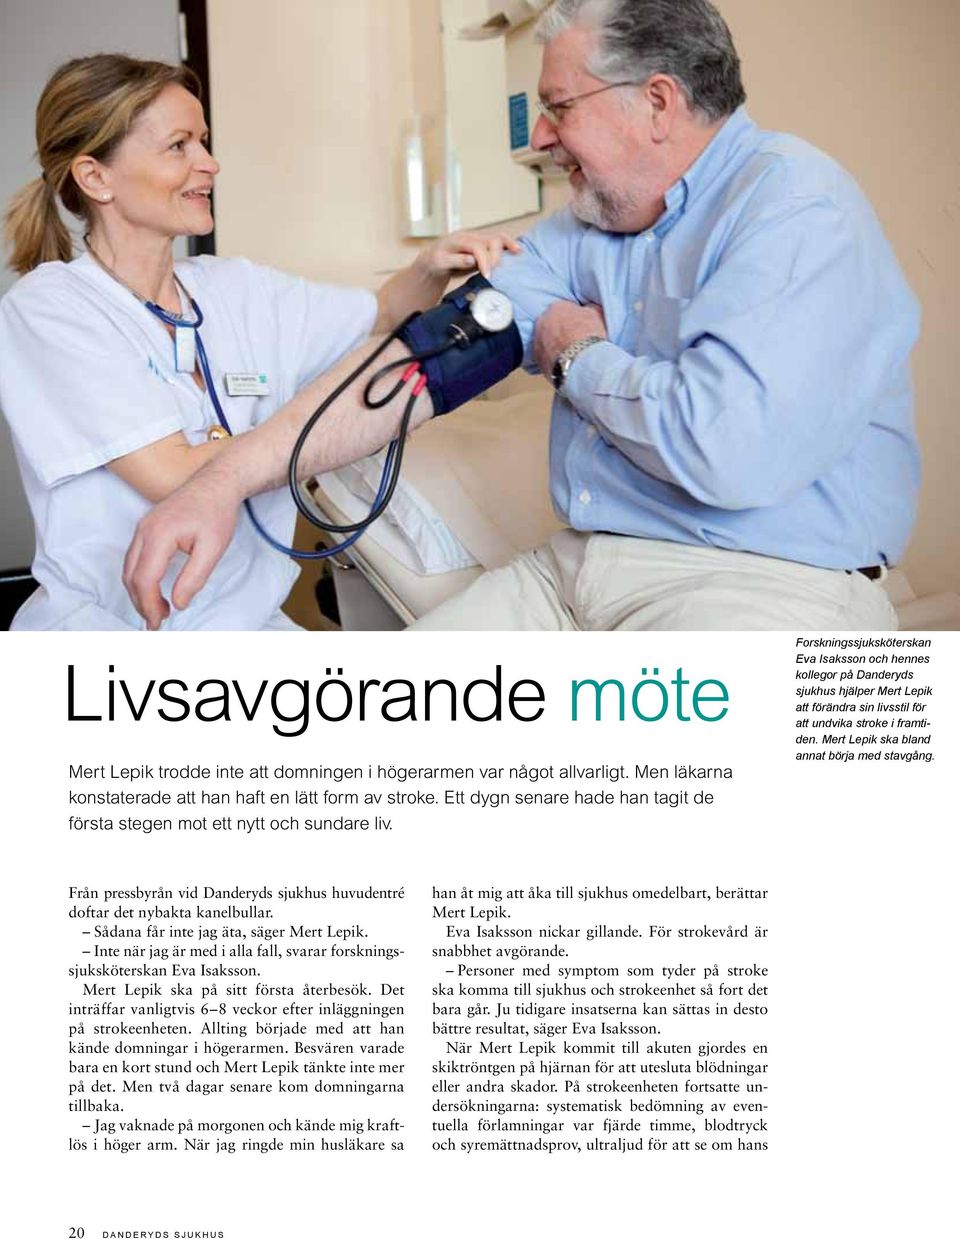 Forskningssjuksköterskan Eva Isaksson och hennes kollegor på Danderyds sjukhus hjälper Mert Lepik att förändra sin livsstil för att undvika stroke i framtiden.